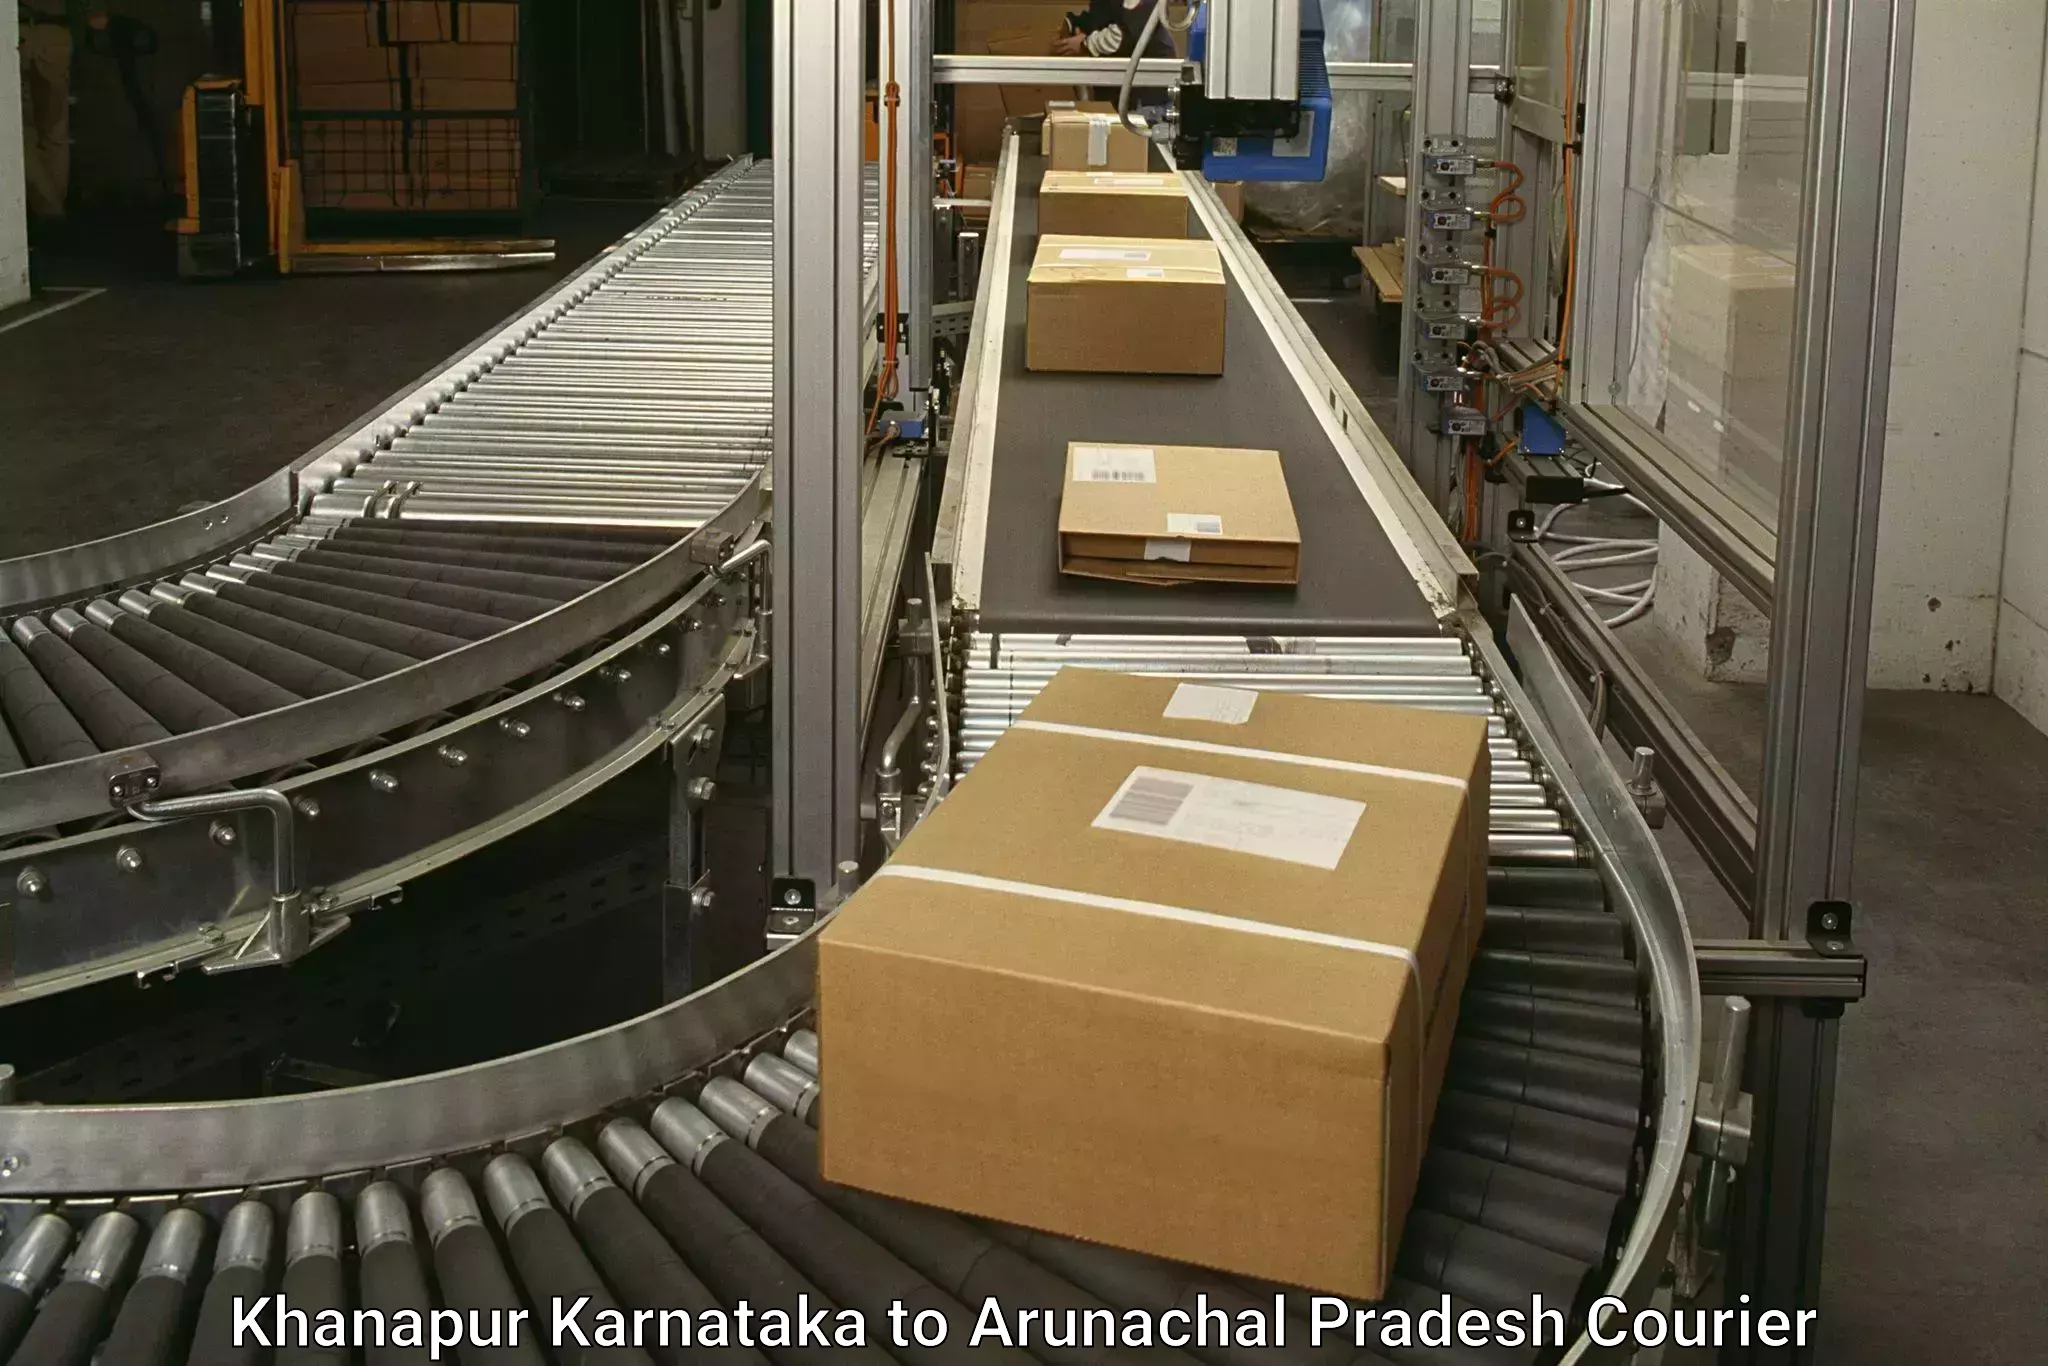 Fast-track shipping solutions Khanapur Karnataka to Dibang Valley